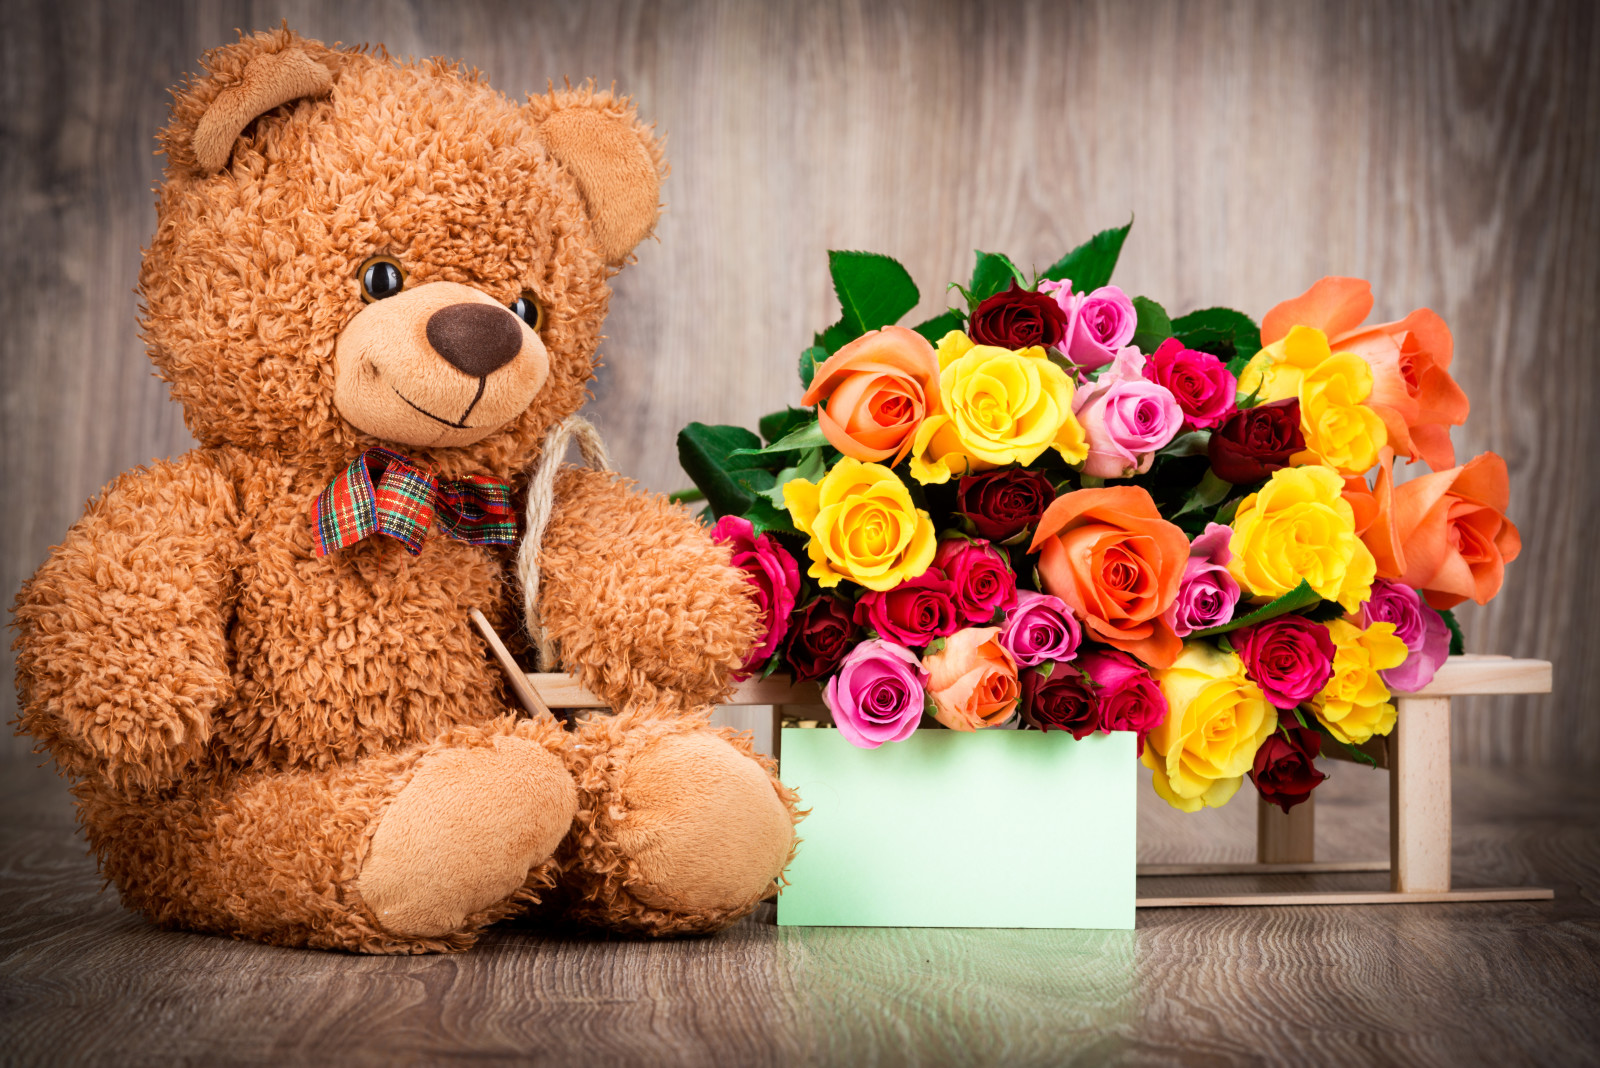 yêu và quý, lãng mạn, ngày lễ tình nhân, quà tặng, hoa hồng, chịu, tim, Teddy